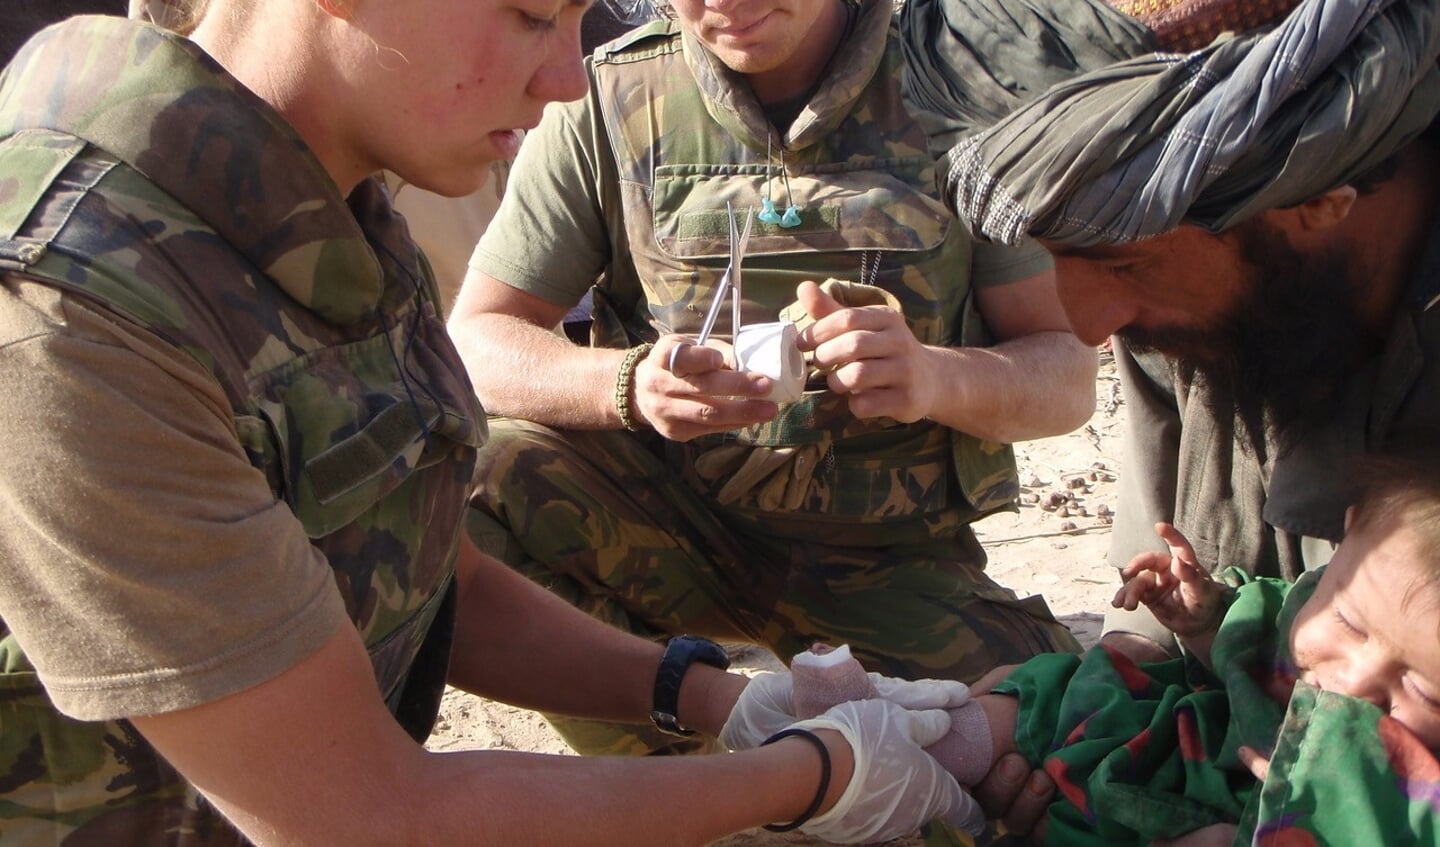 Loes van den Boomen behandelt een kind aan diens verwondingen tijdens een van haar missies in Afghanistan.